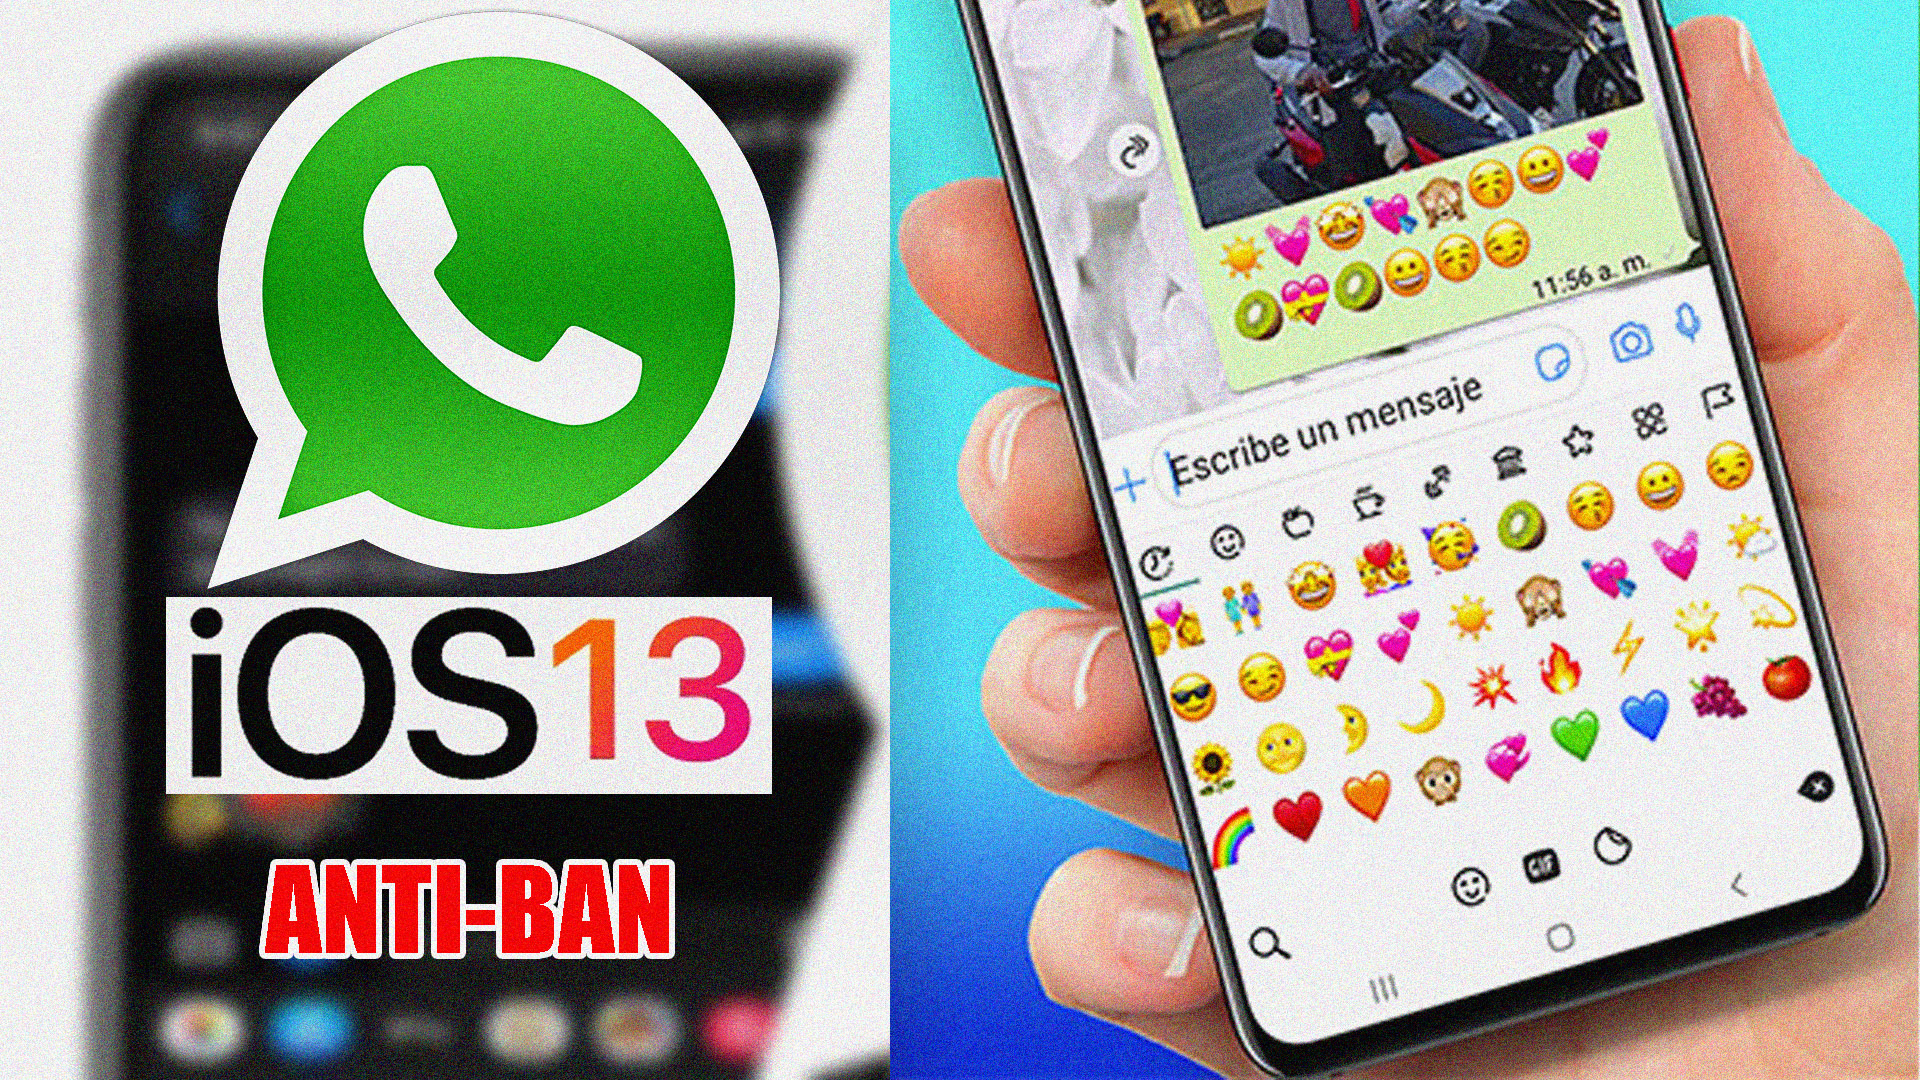 Whatsapp Estilo Iphone en Android | IOS 13 |Modo DARK